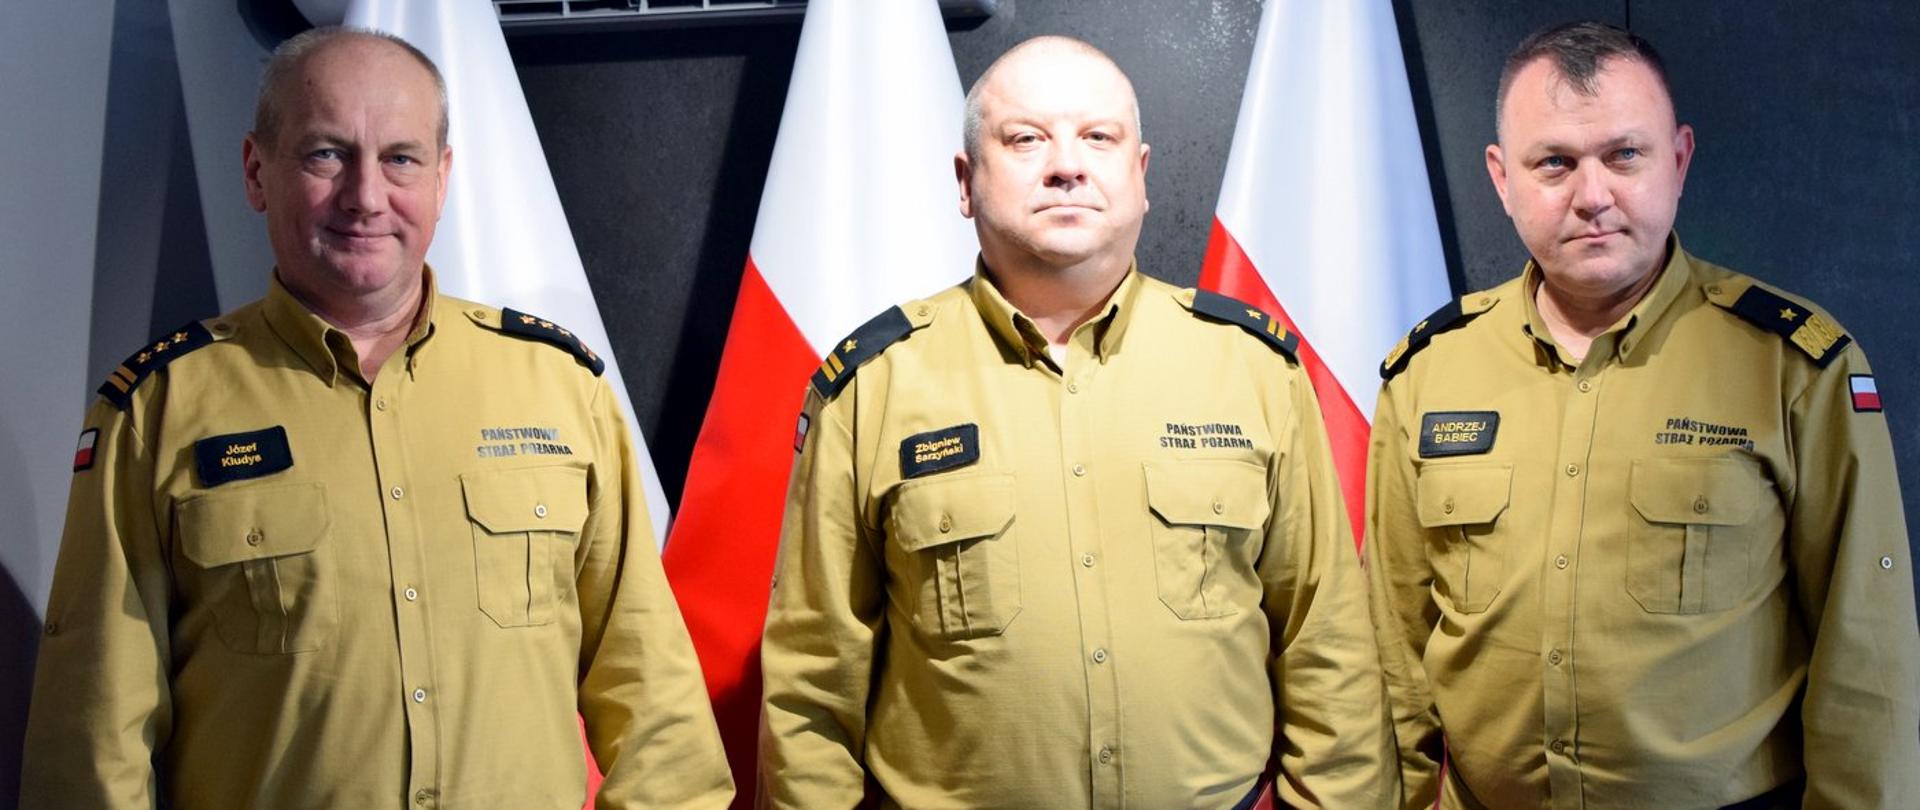 Zdjęcie zrobione wewnątrz pomieszczenia. Na zdjęciu trzech oficerów Państwowej Straży Pożarnej. Za nimi ustawione są biało-czerwone flagi.